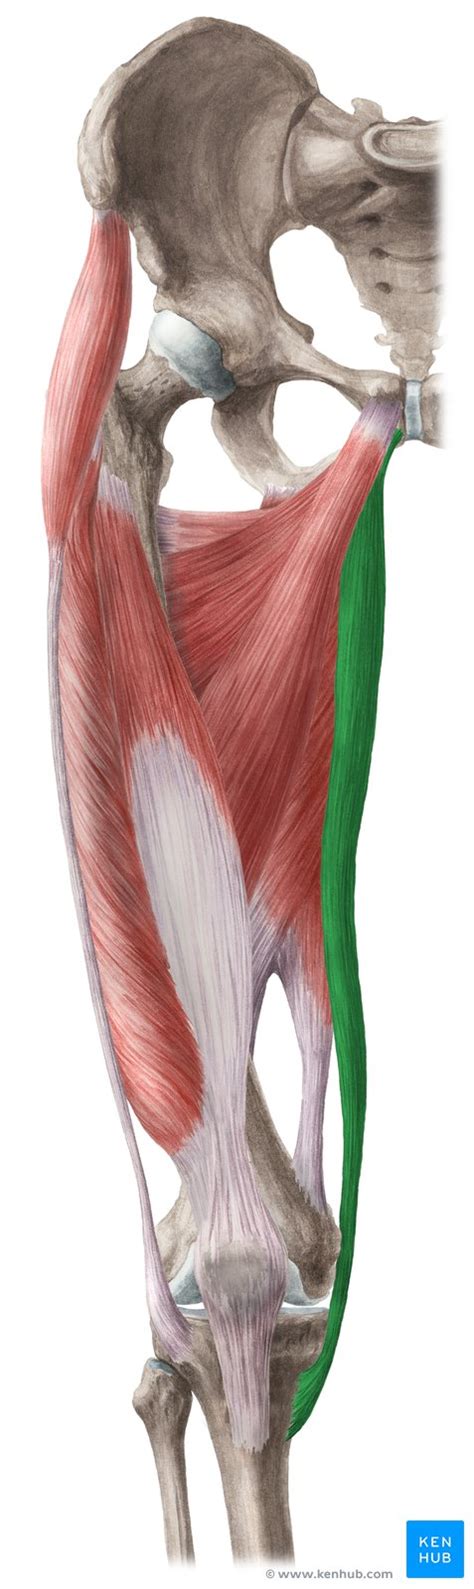 Musculus Gracilis Anatomie Funktion And Klinik Kenhub